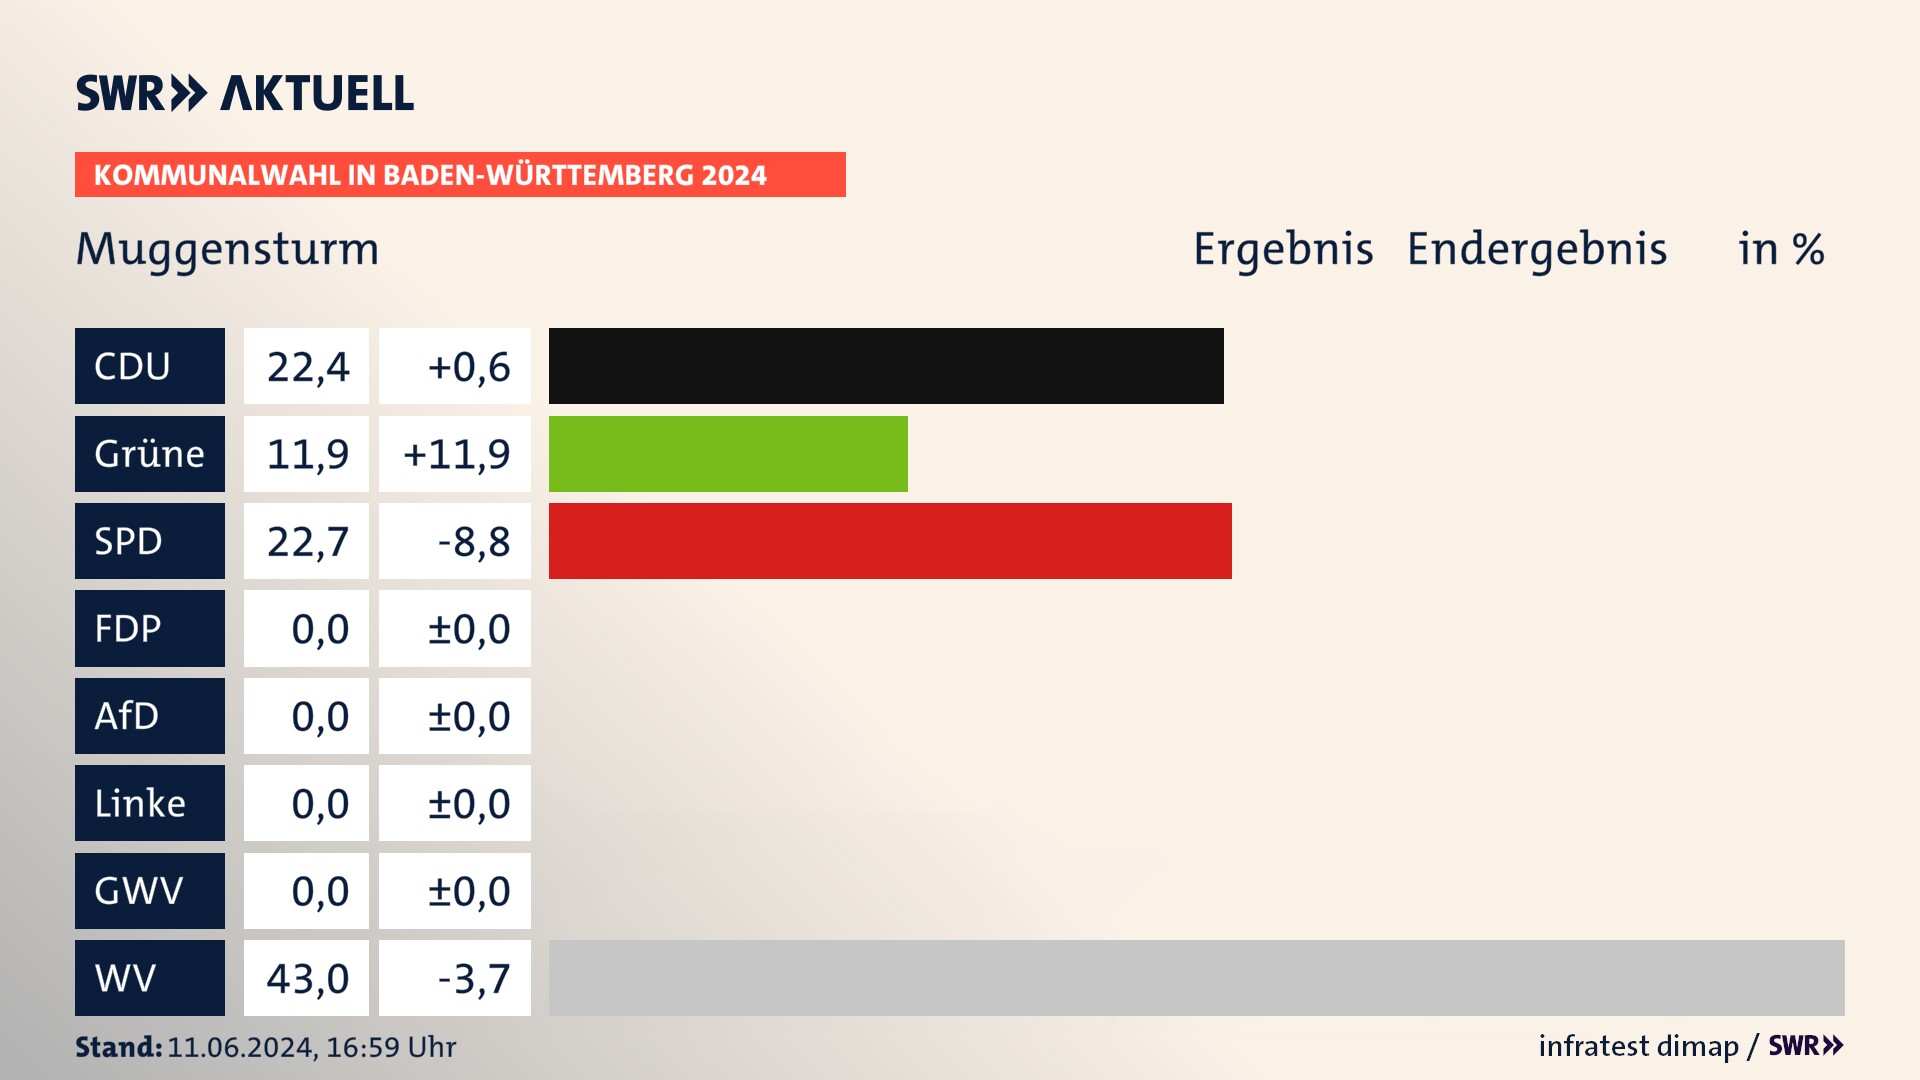 Kommunalwahl 2024 Endergebnis Zweitstimme für Muggensturm. In Muggensturm erzielt die CDU 22,4 Prozent der gültigen  Stimmen. Die Grünen landen bei 11,9 Prozent. Die SPD erreicht 22,7 Prozent. Die Wählervereinigungen kommen auf 43,0 Prozent.